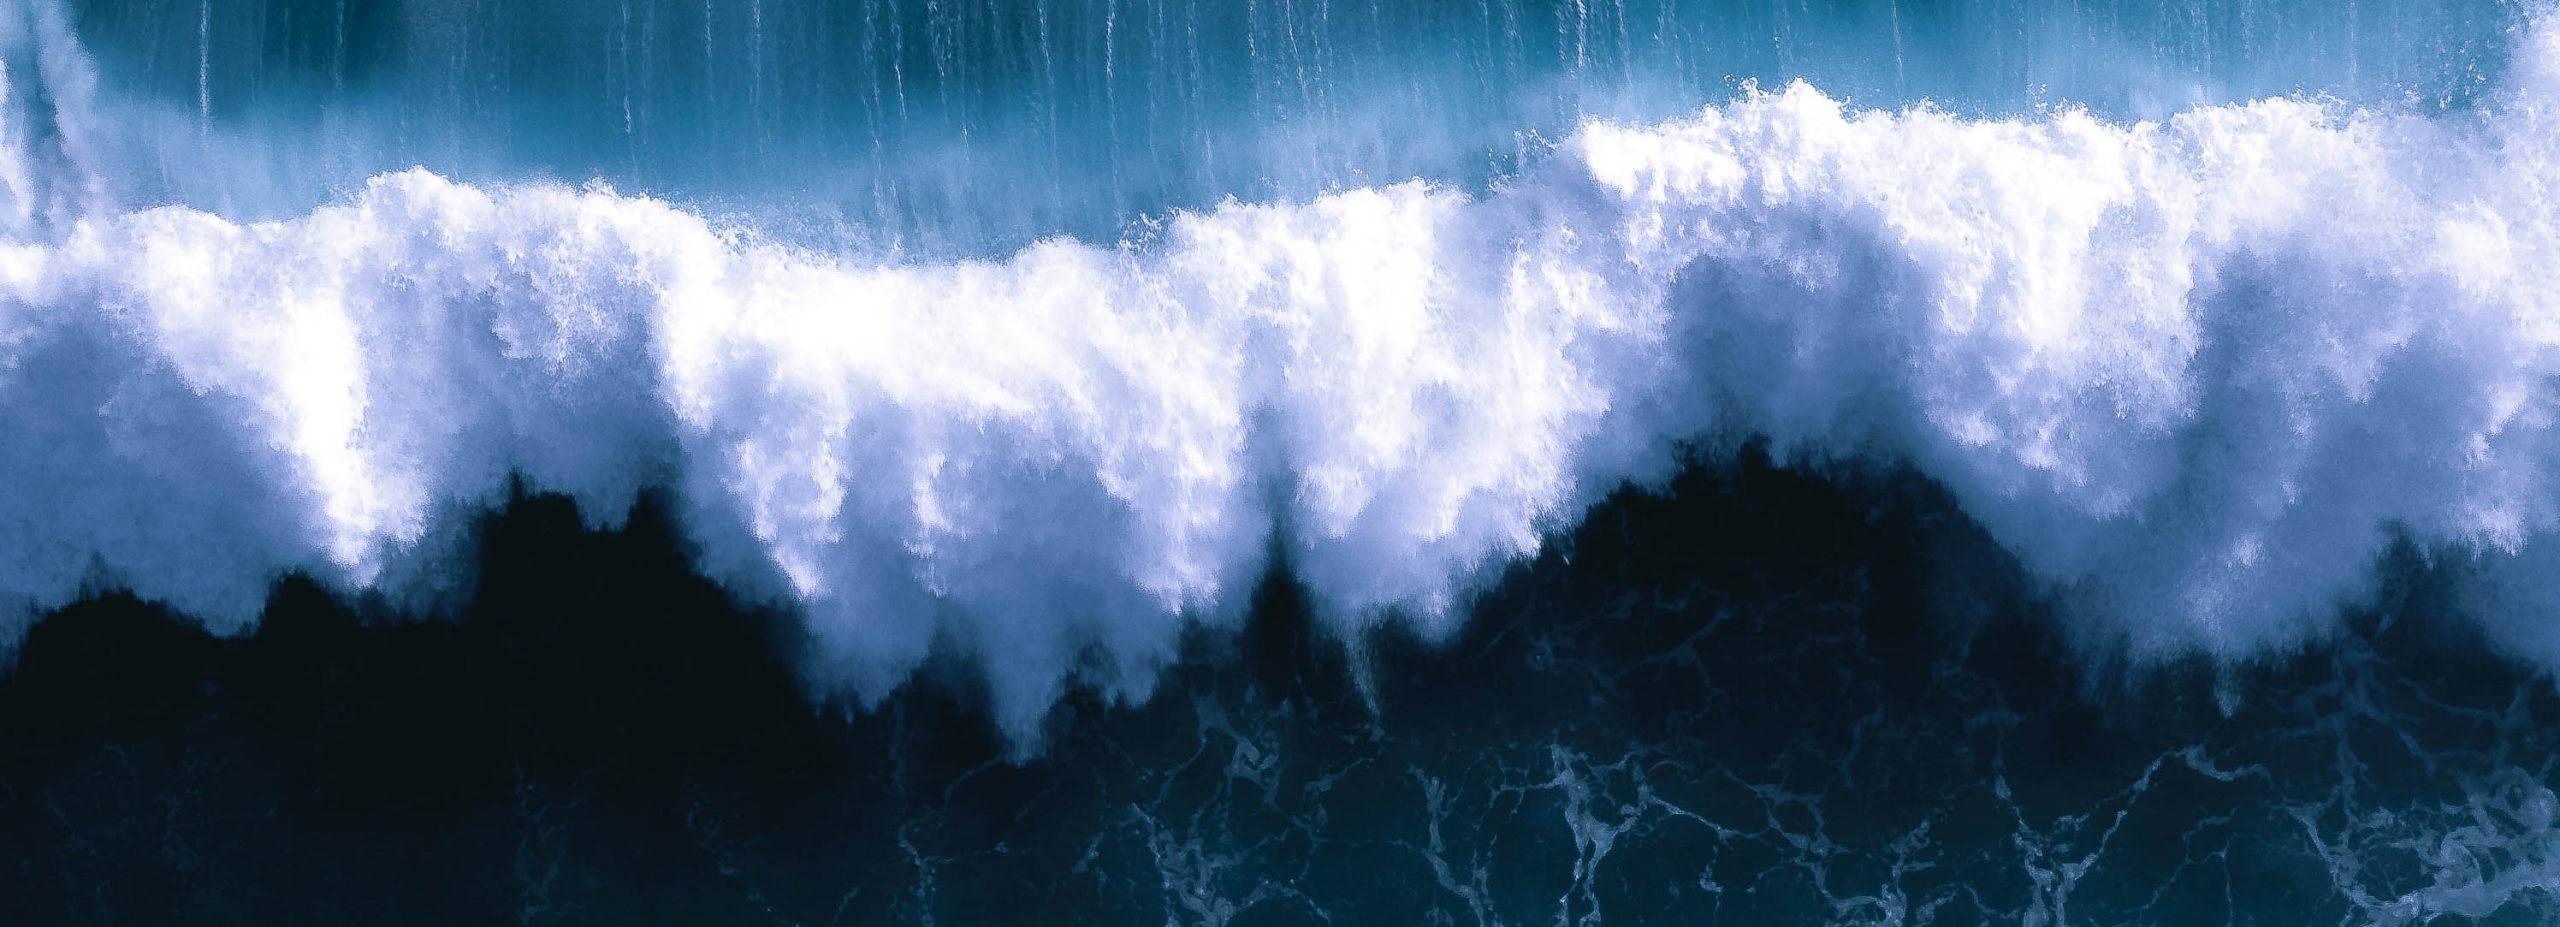 Hoje assinala-se o Dia Mundial da Sensibilização para o Risco de Tsunami